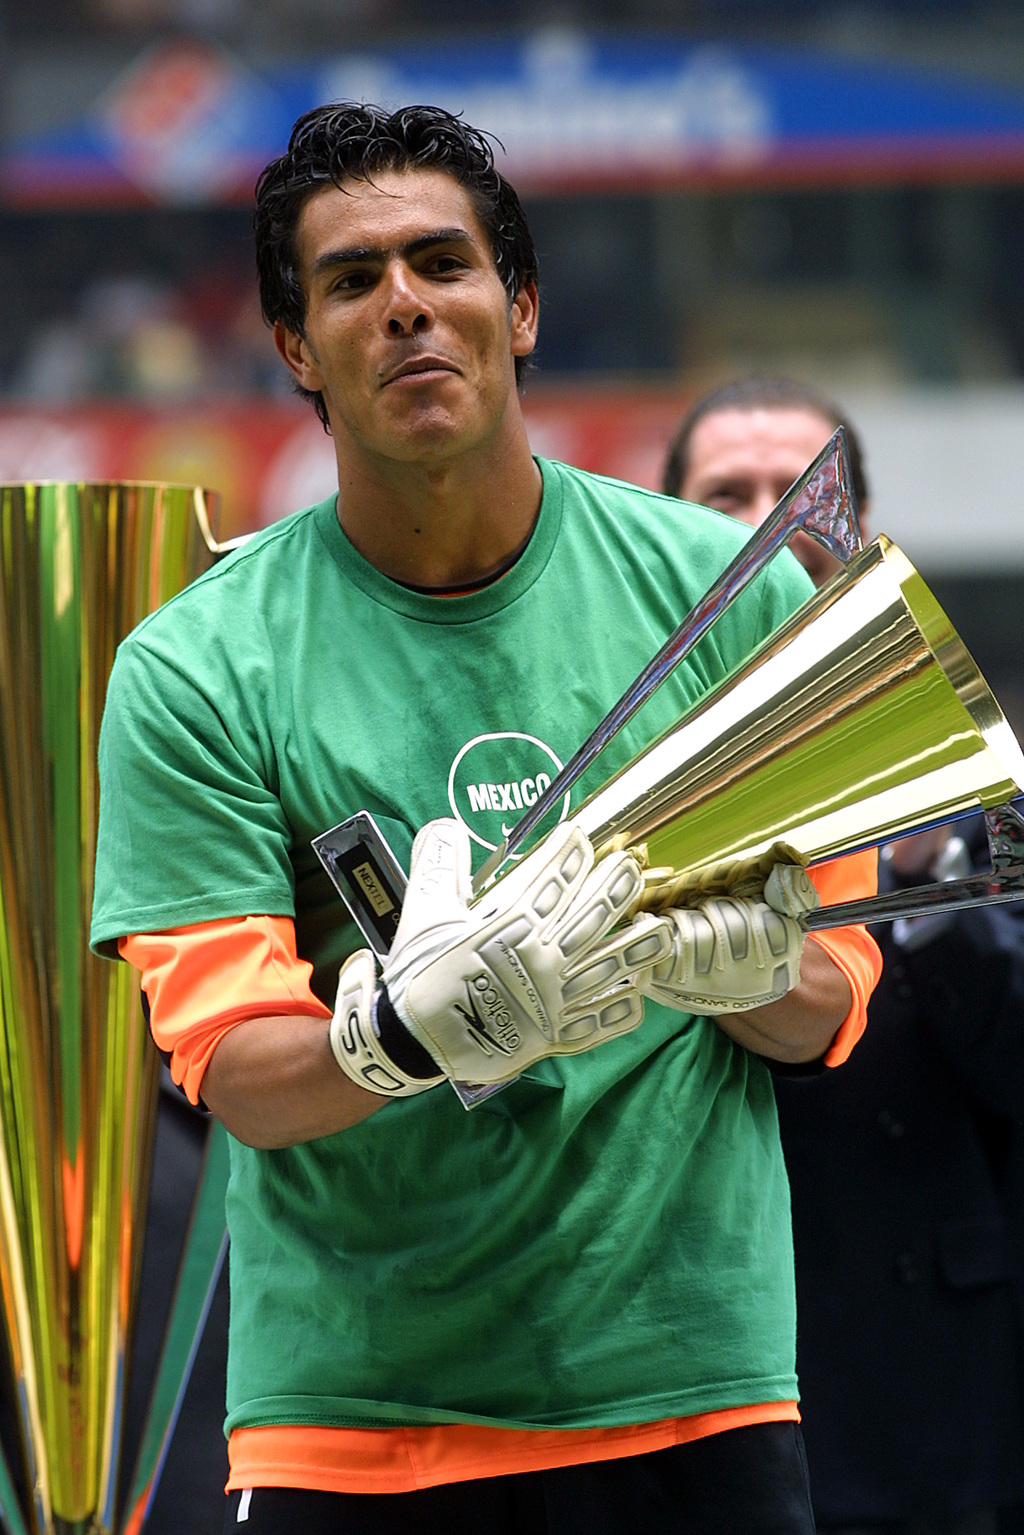 En el 2003 en el Estadio Azteca, además de alzarse como monarca con México al vencer por la mínima diferencia a Brasil, fue catalogado como el mejor arquero de la competencia y recibió premio de Guantes de Oro. (JAM MEDIA)